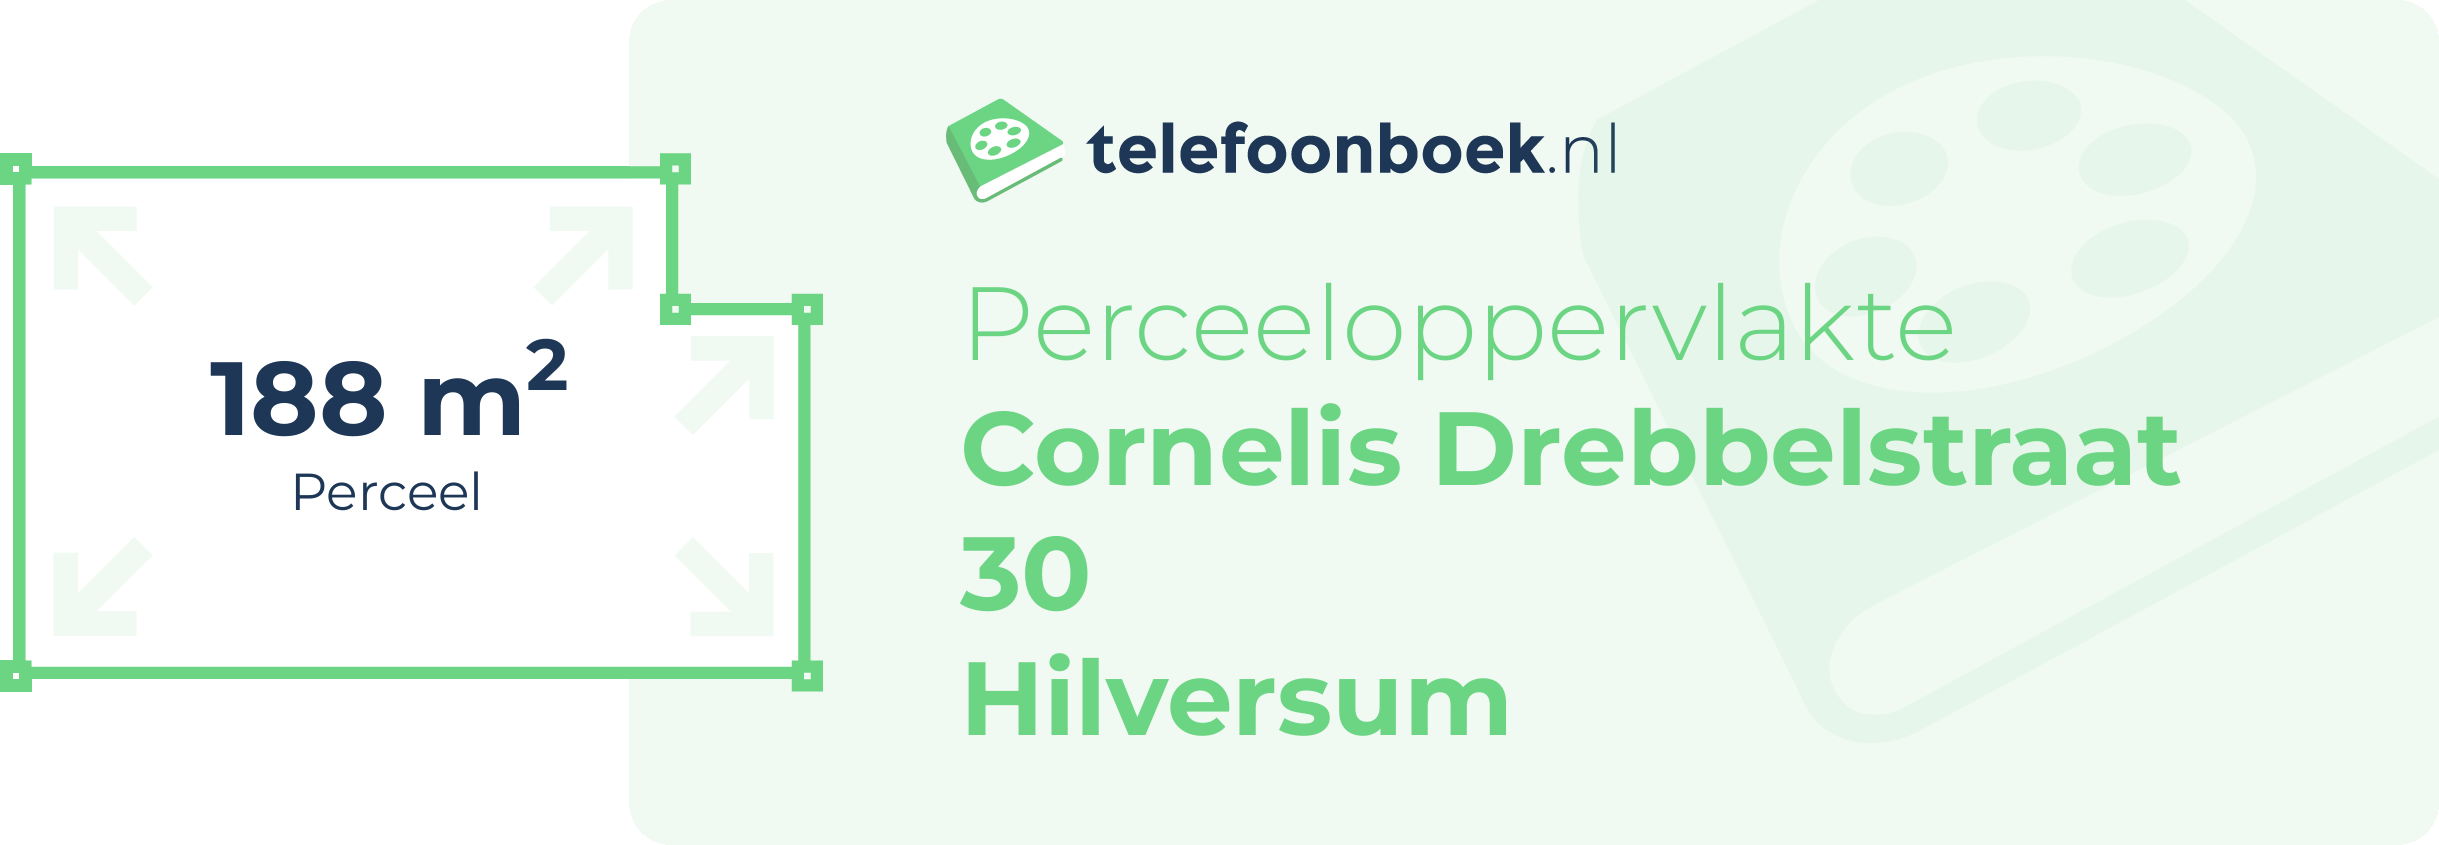 Perceeloppervlakte Cornelis Drebbelstraat 30 Hilversum